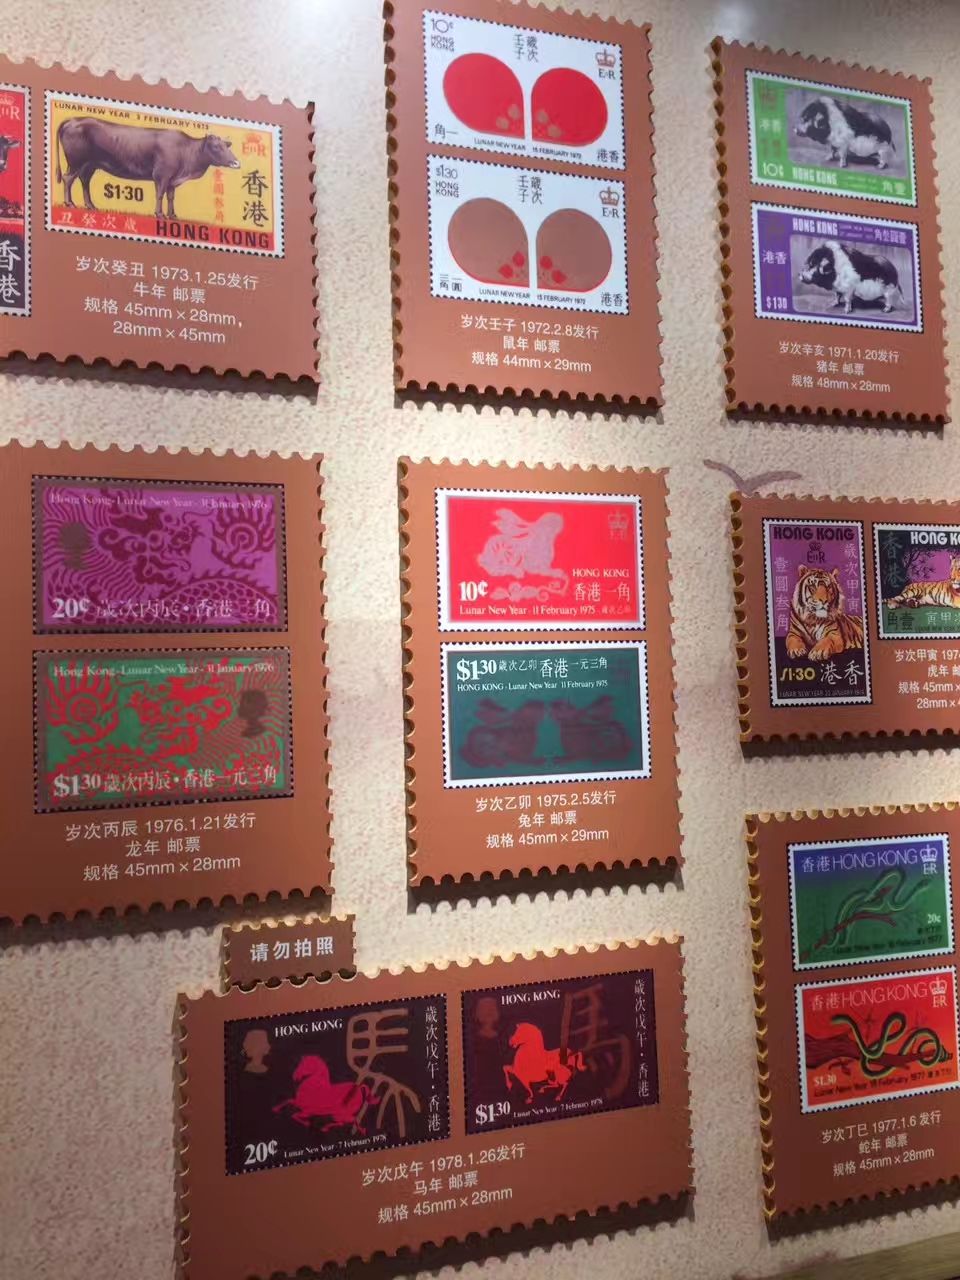 苏州生肖邮票博物馆